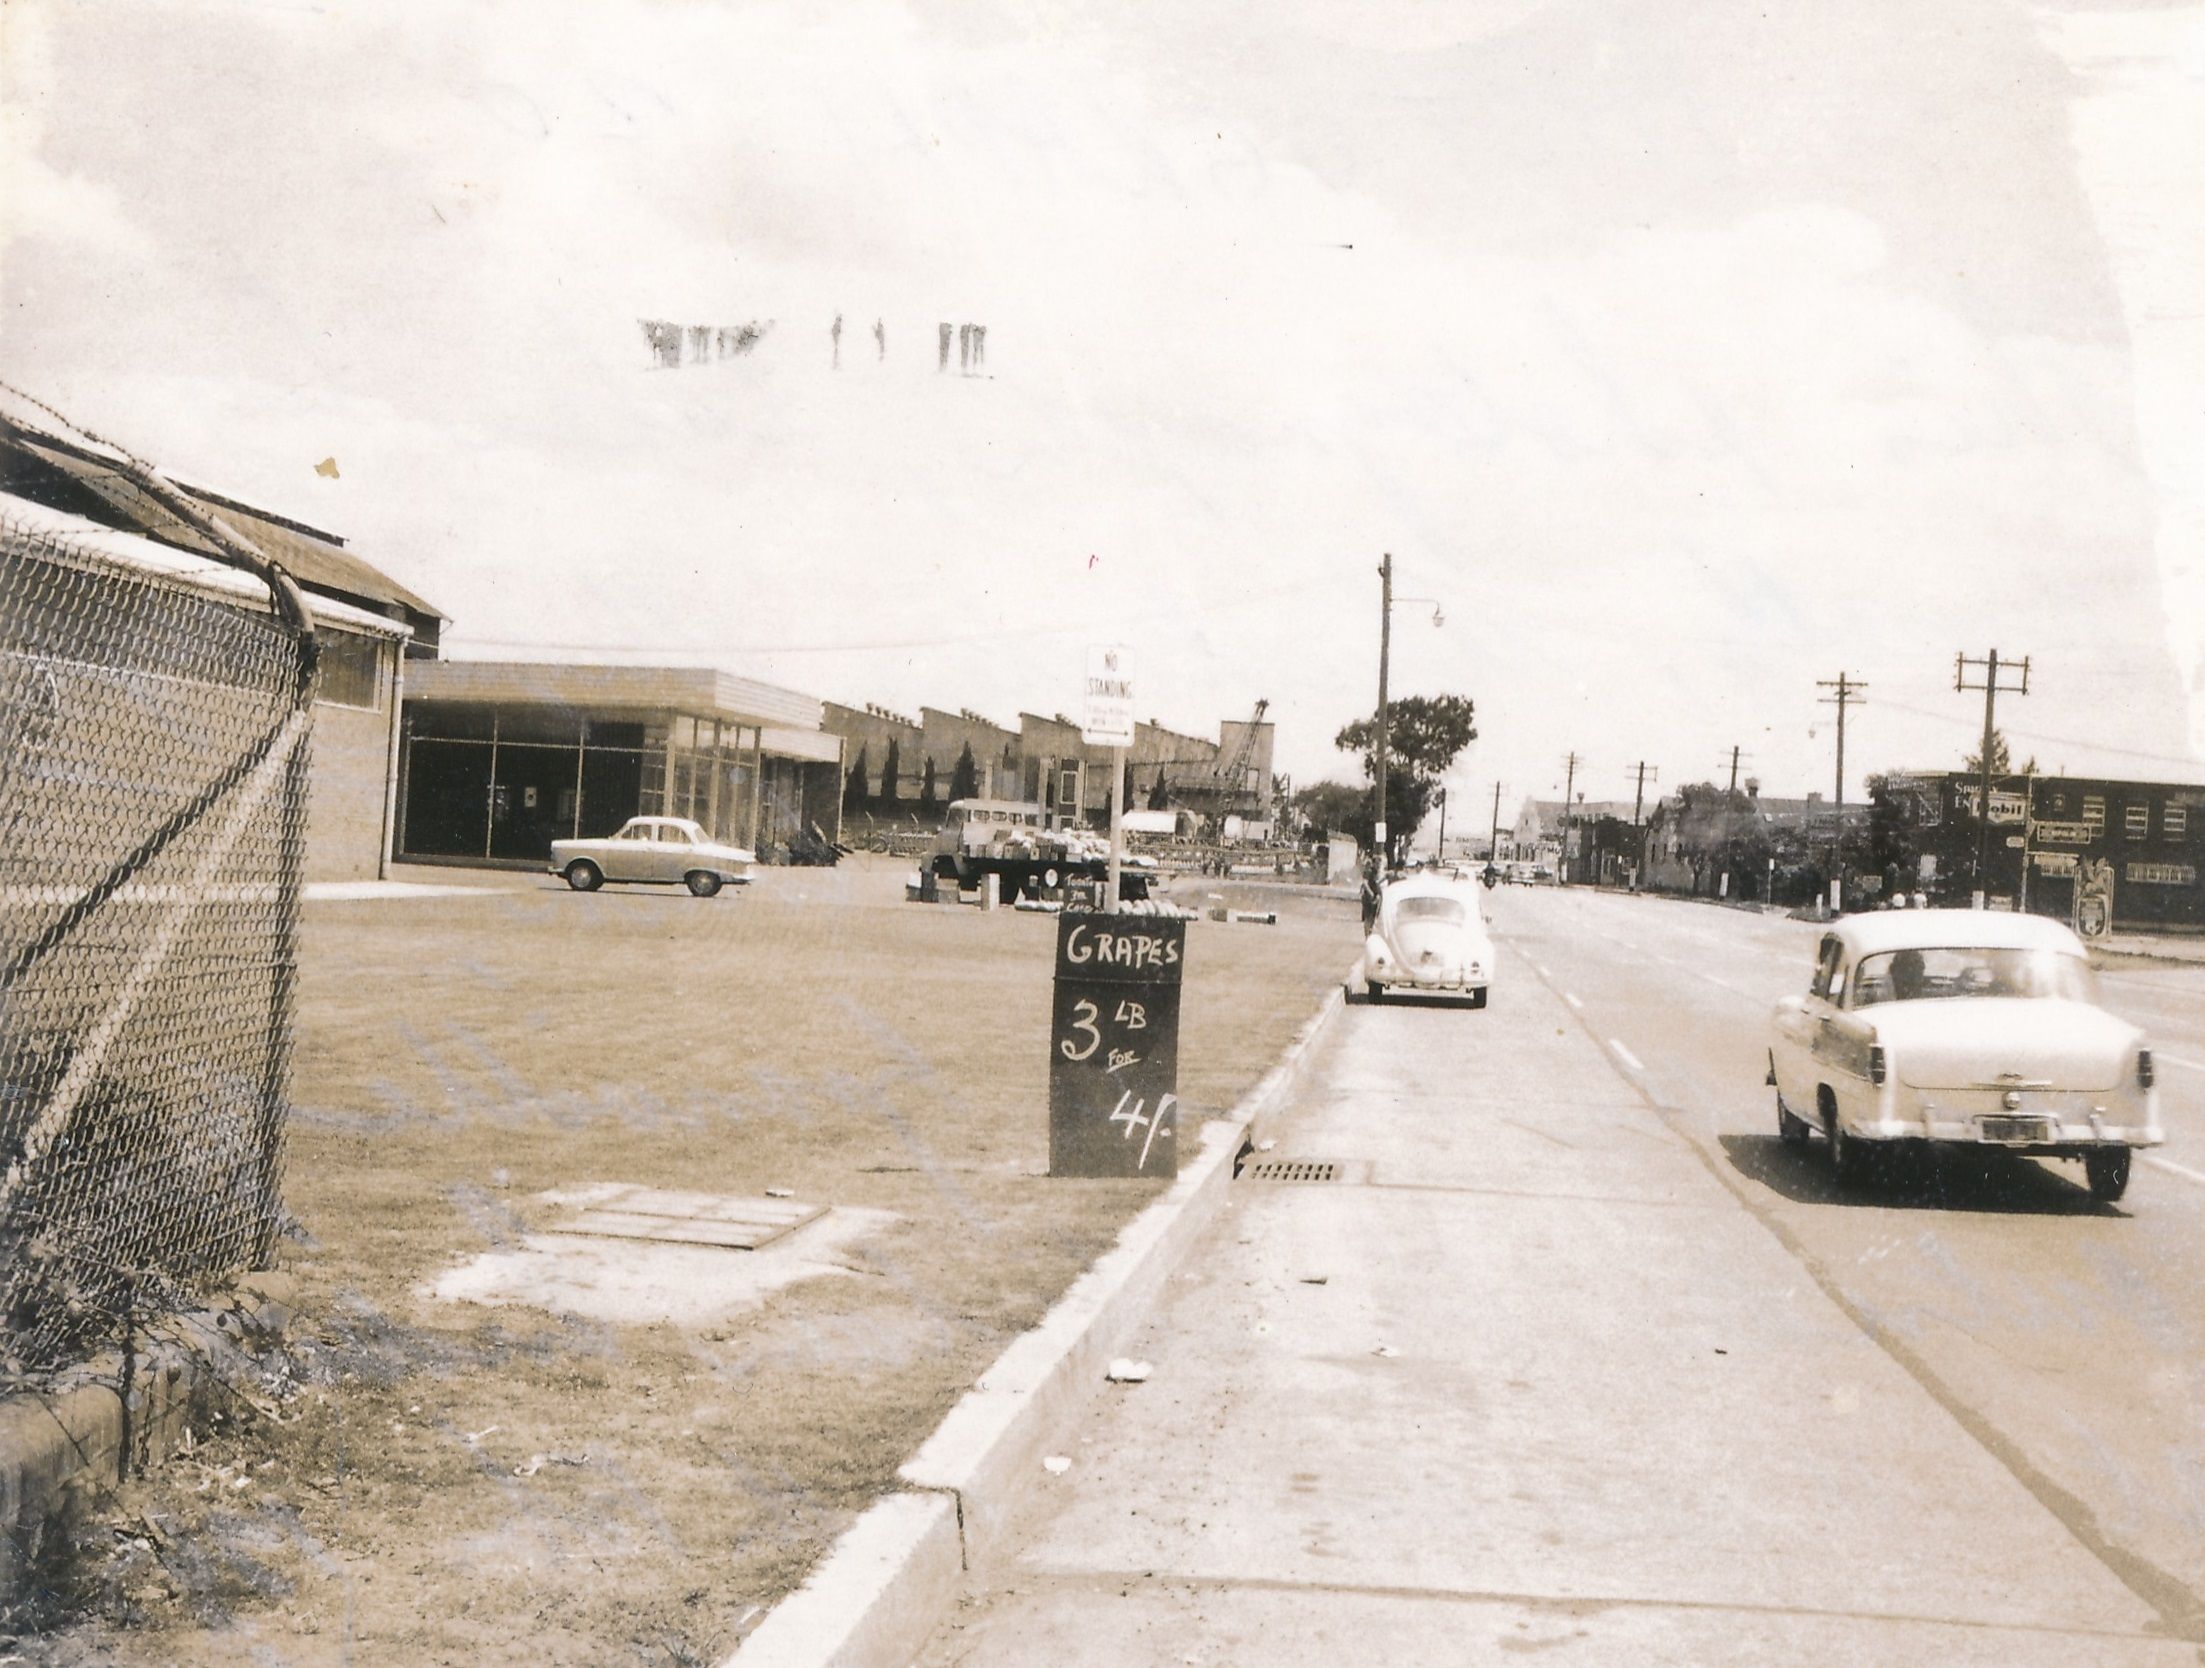 Parramatta Road, Granville, 1965 (Source: City of Parramatta Council Archives, PRS219/218a)